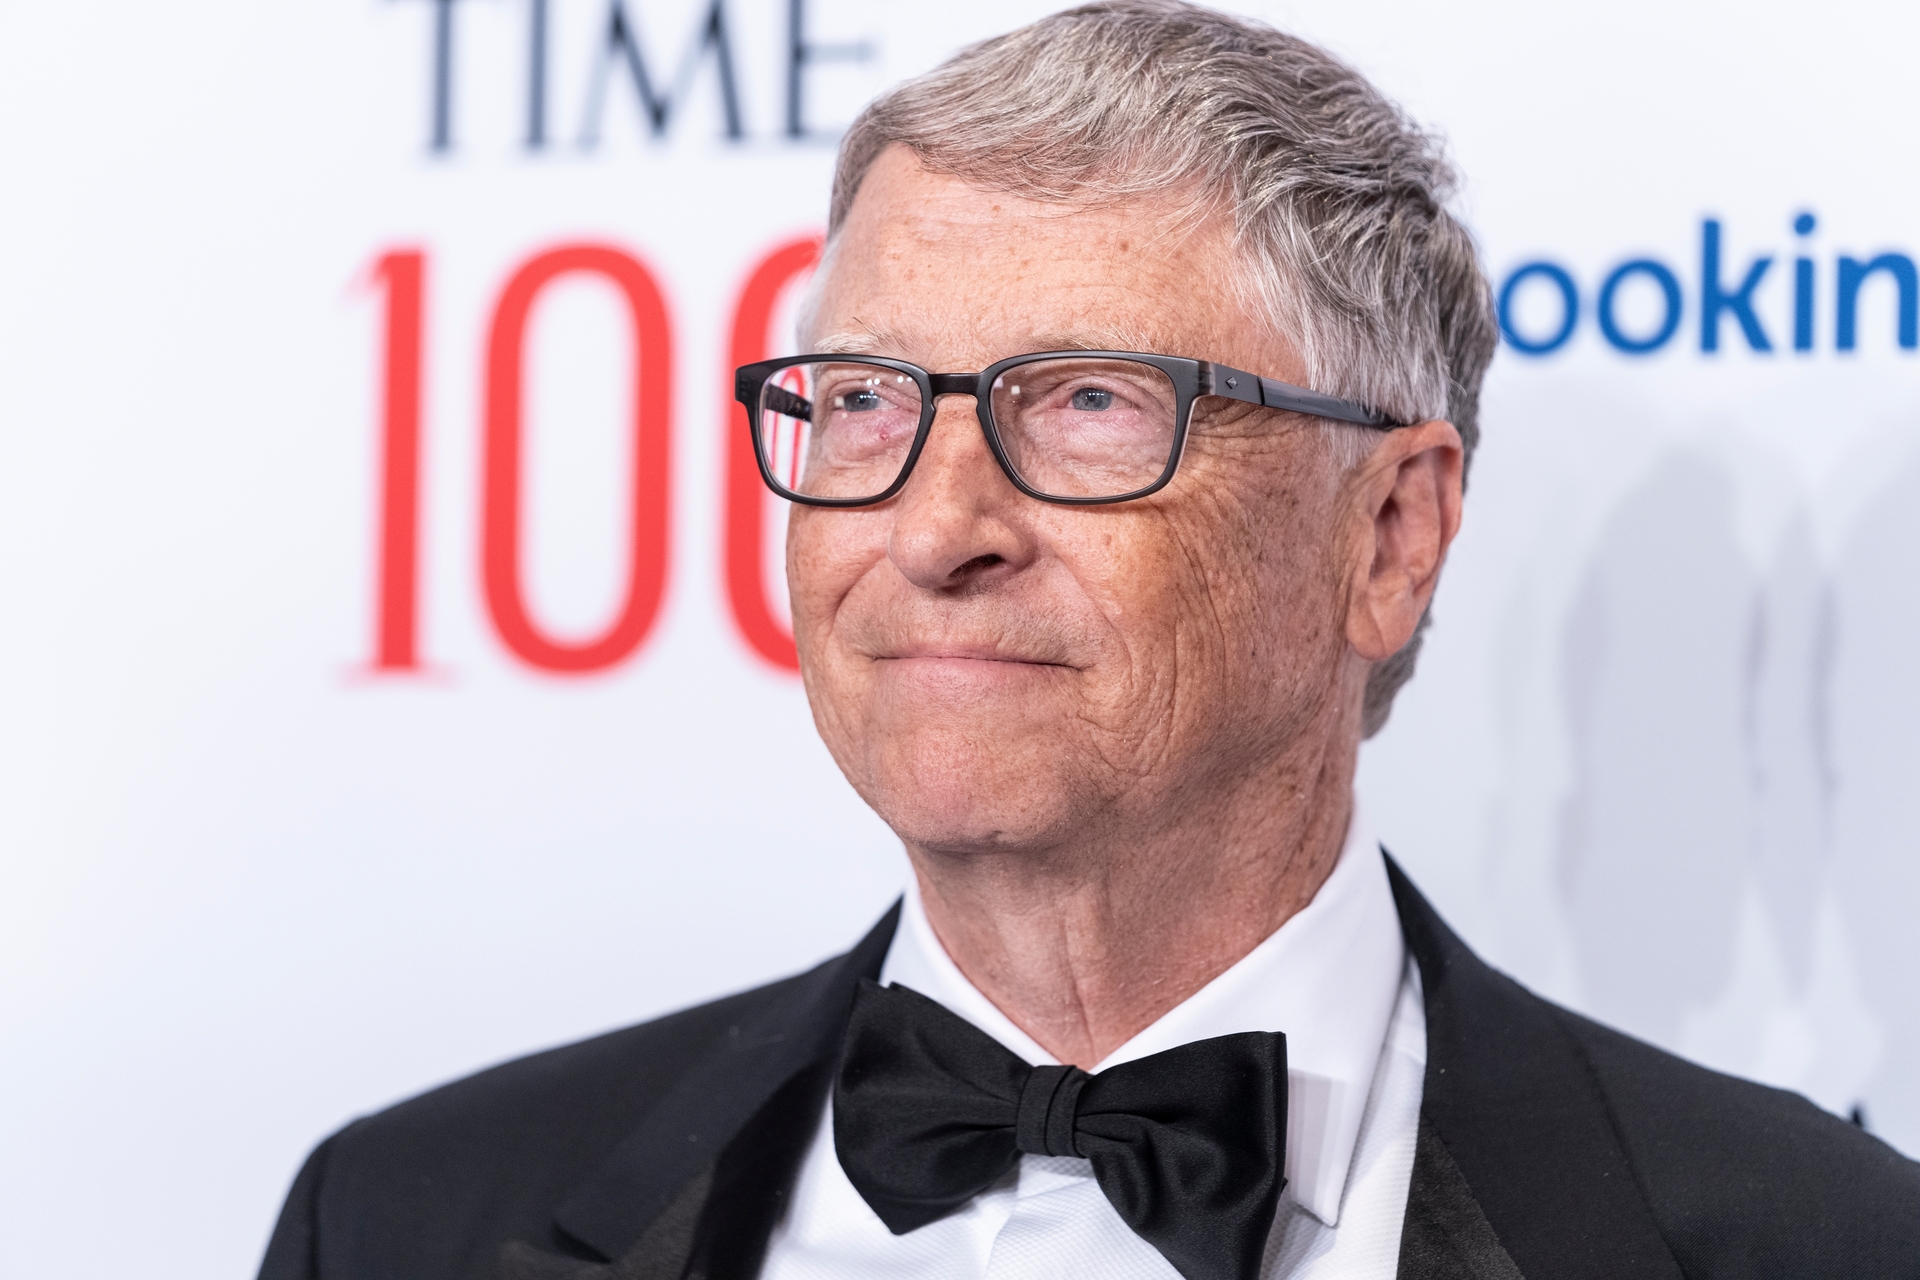 Pour Bill Gates, l'IA va profondément modifier notre rapport à la technologie